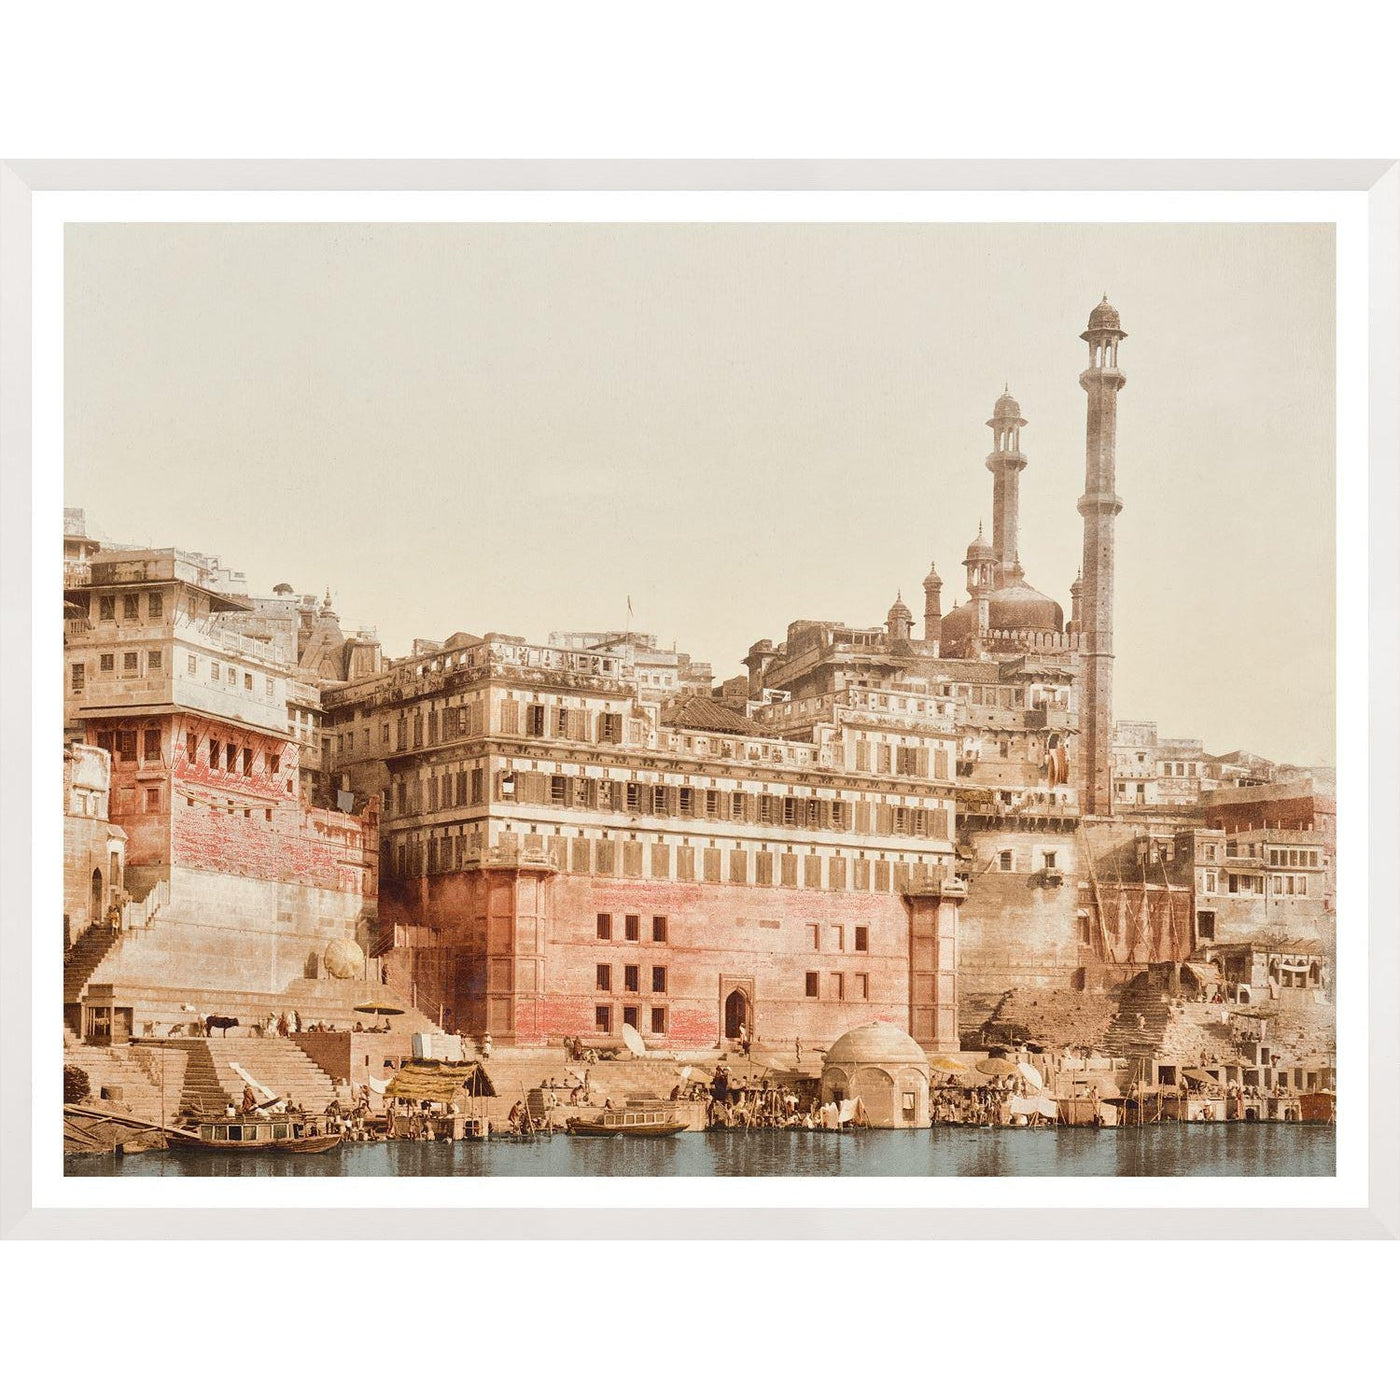 Benares, India 19th Century